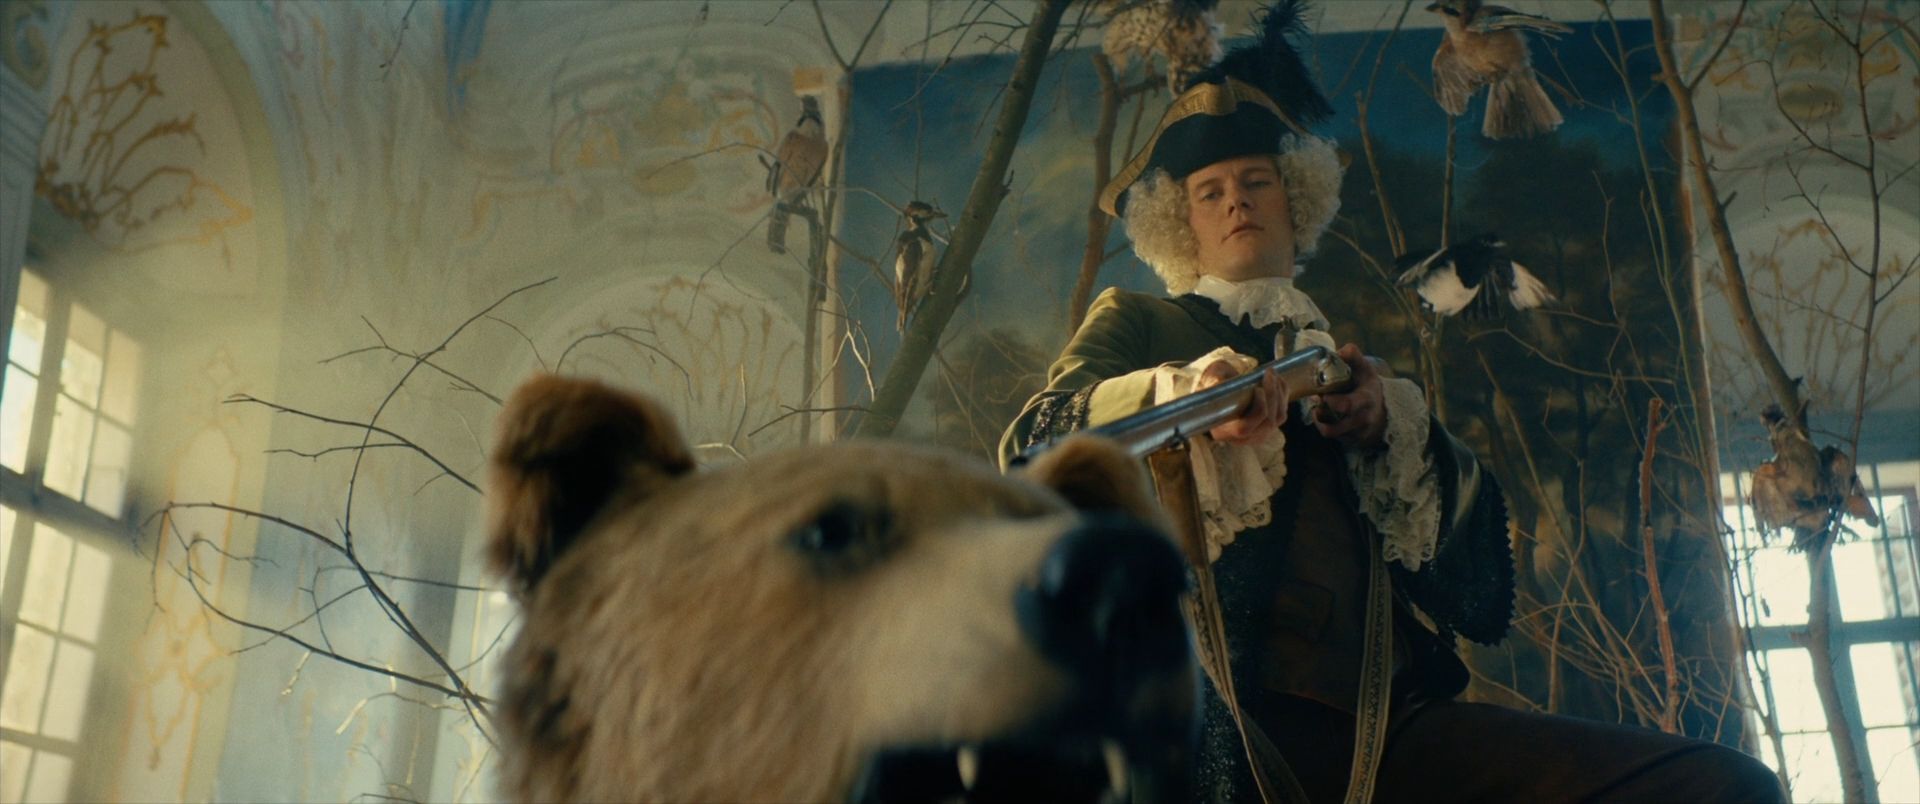 Главный антагонист Фредерик де Шинкель позирует с медведем для картины